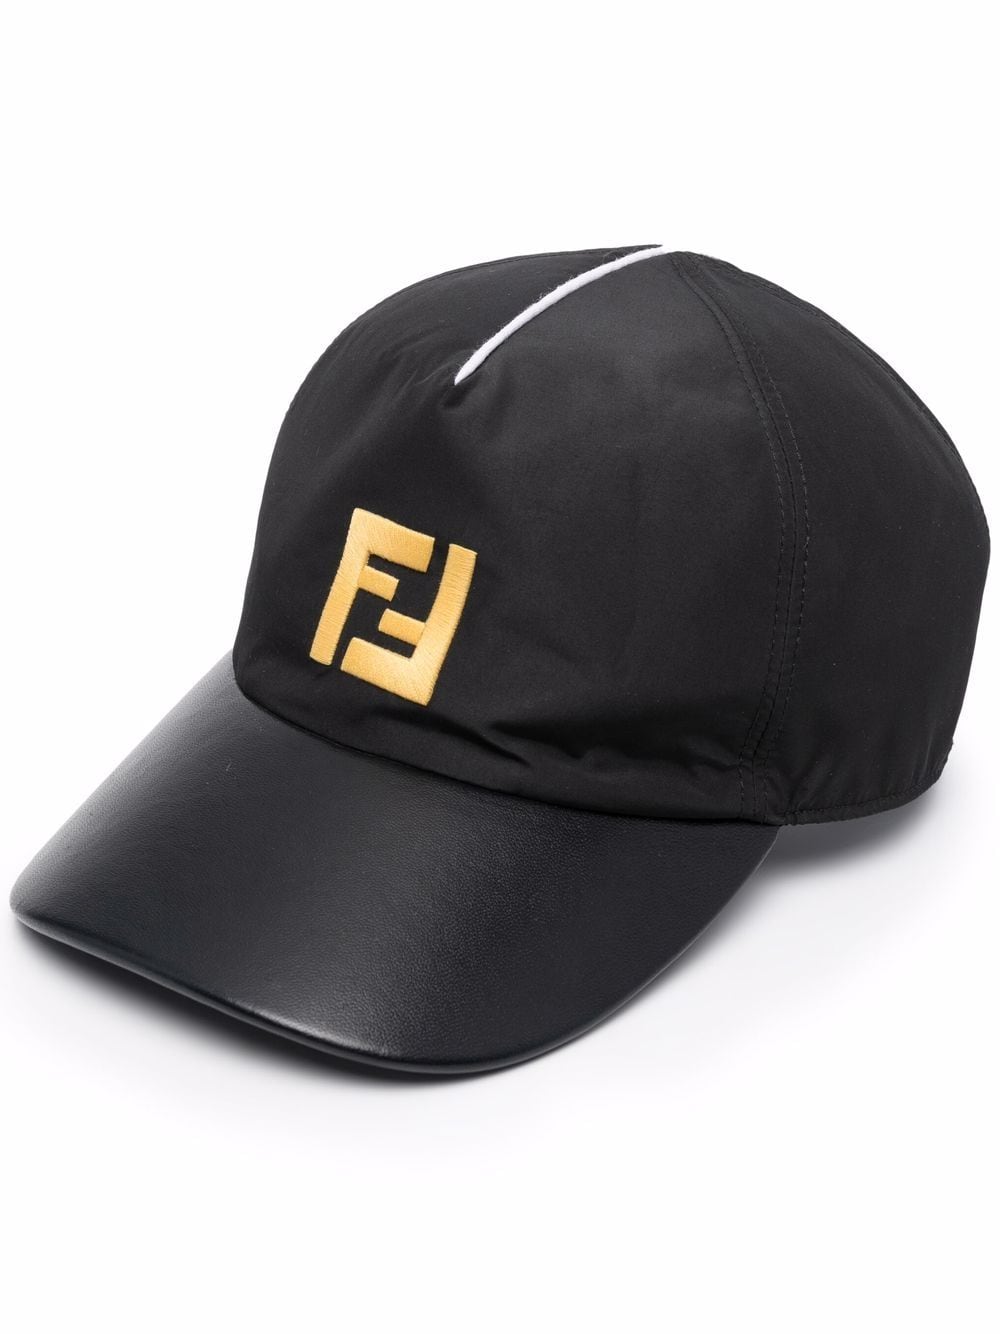 фото Fendi бейсболка с логотипом ff